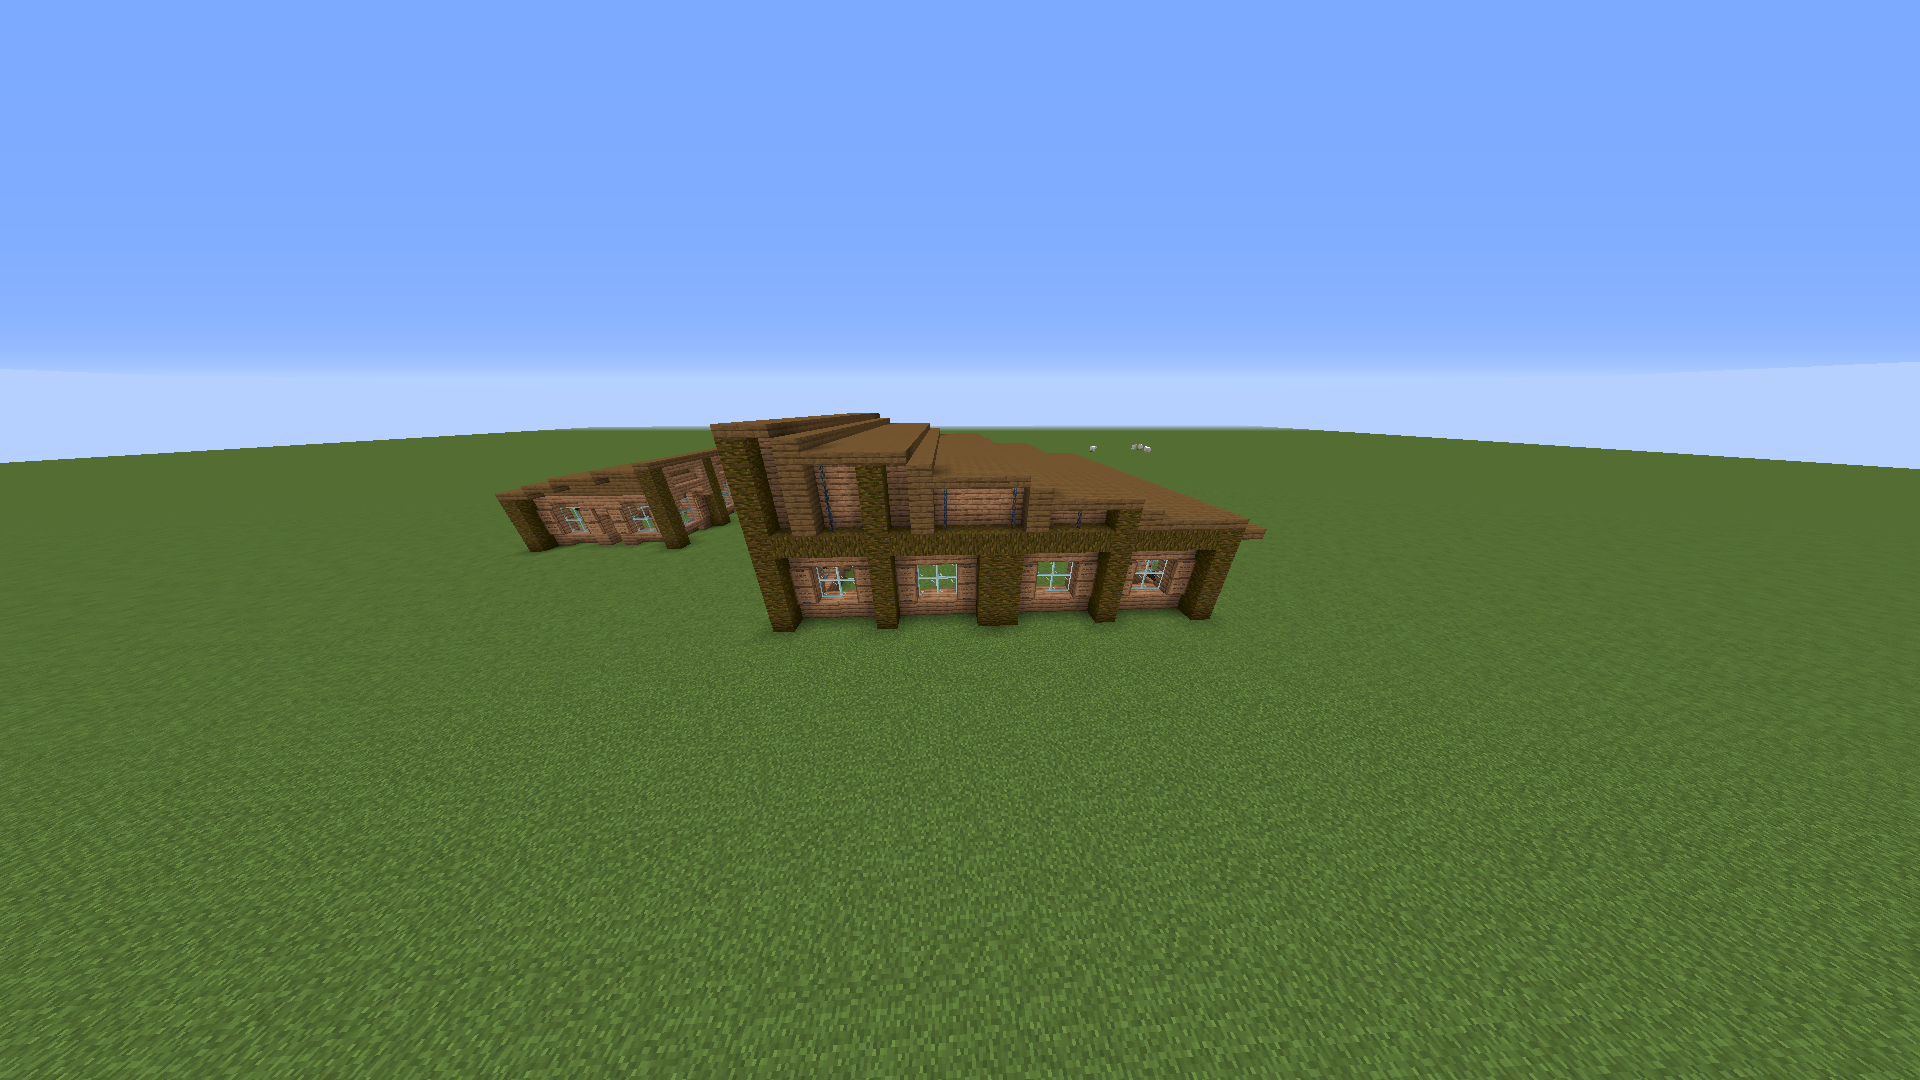 How do you like my Minecraft house - 2